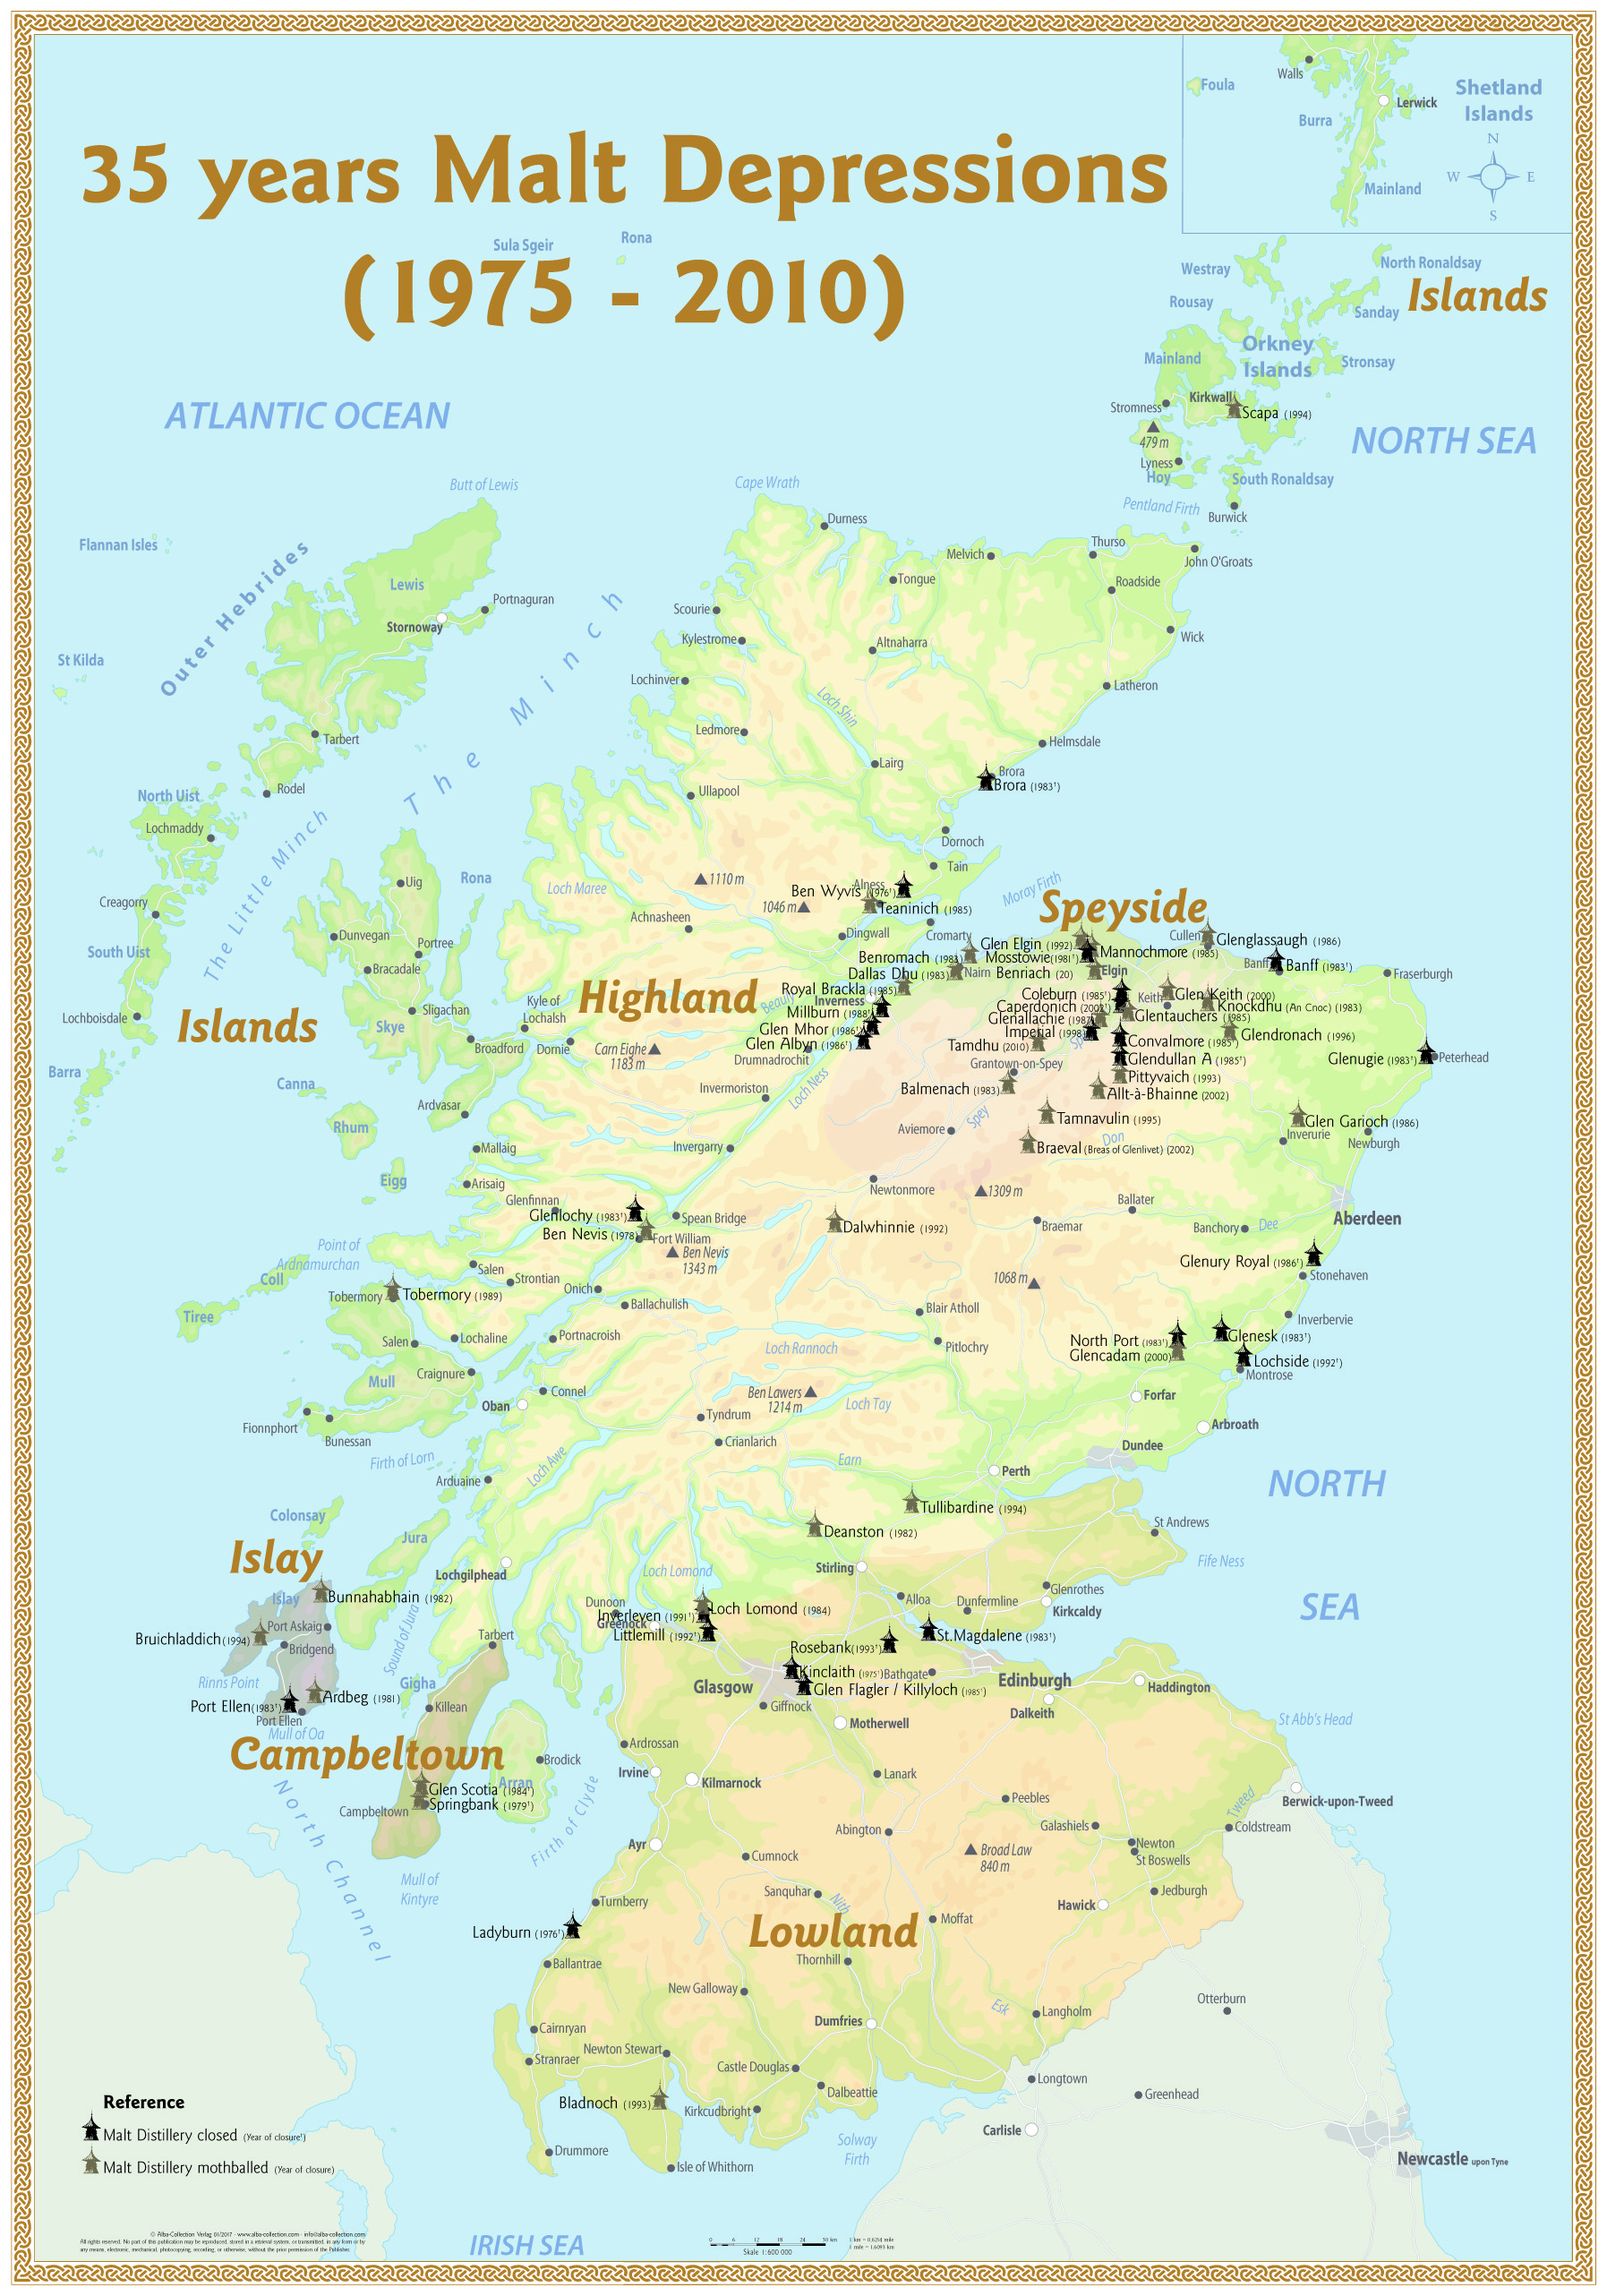 Destillerien In Schottland Karte | hanzeontwerpfabriek